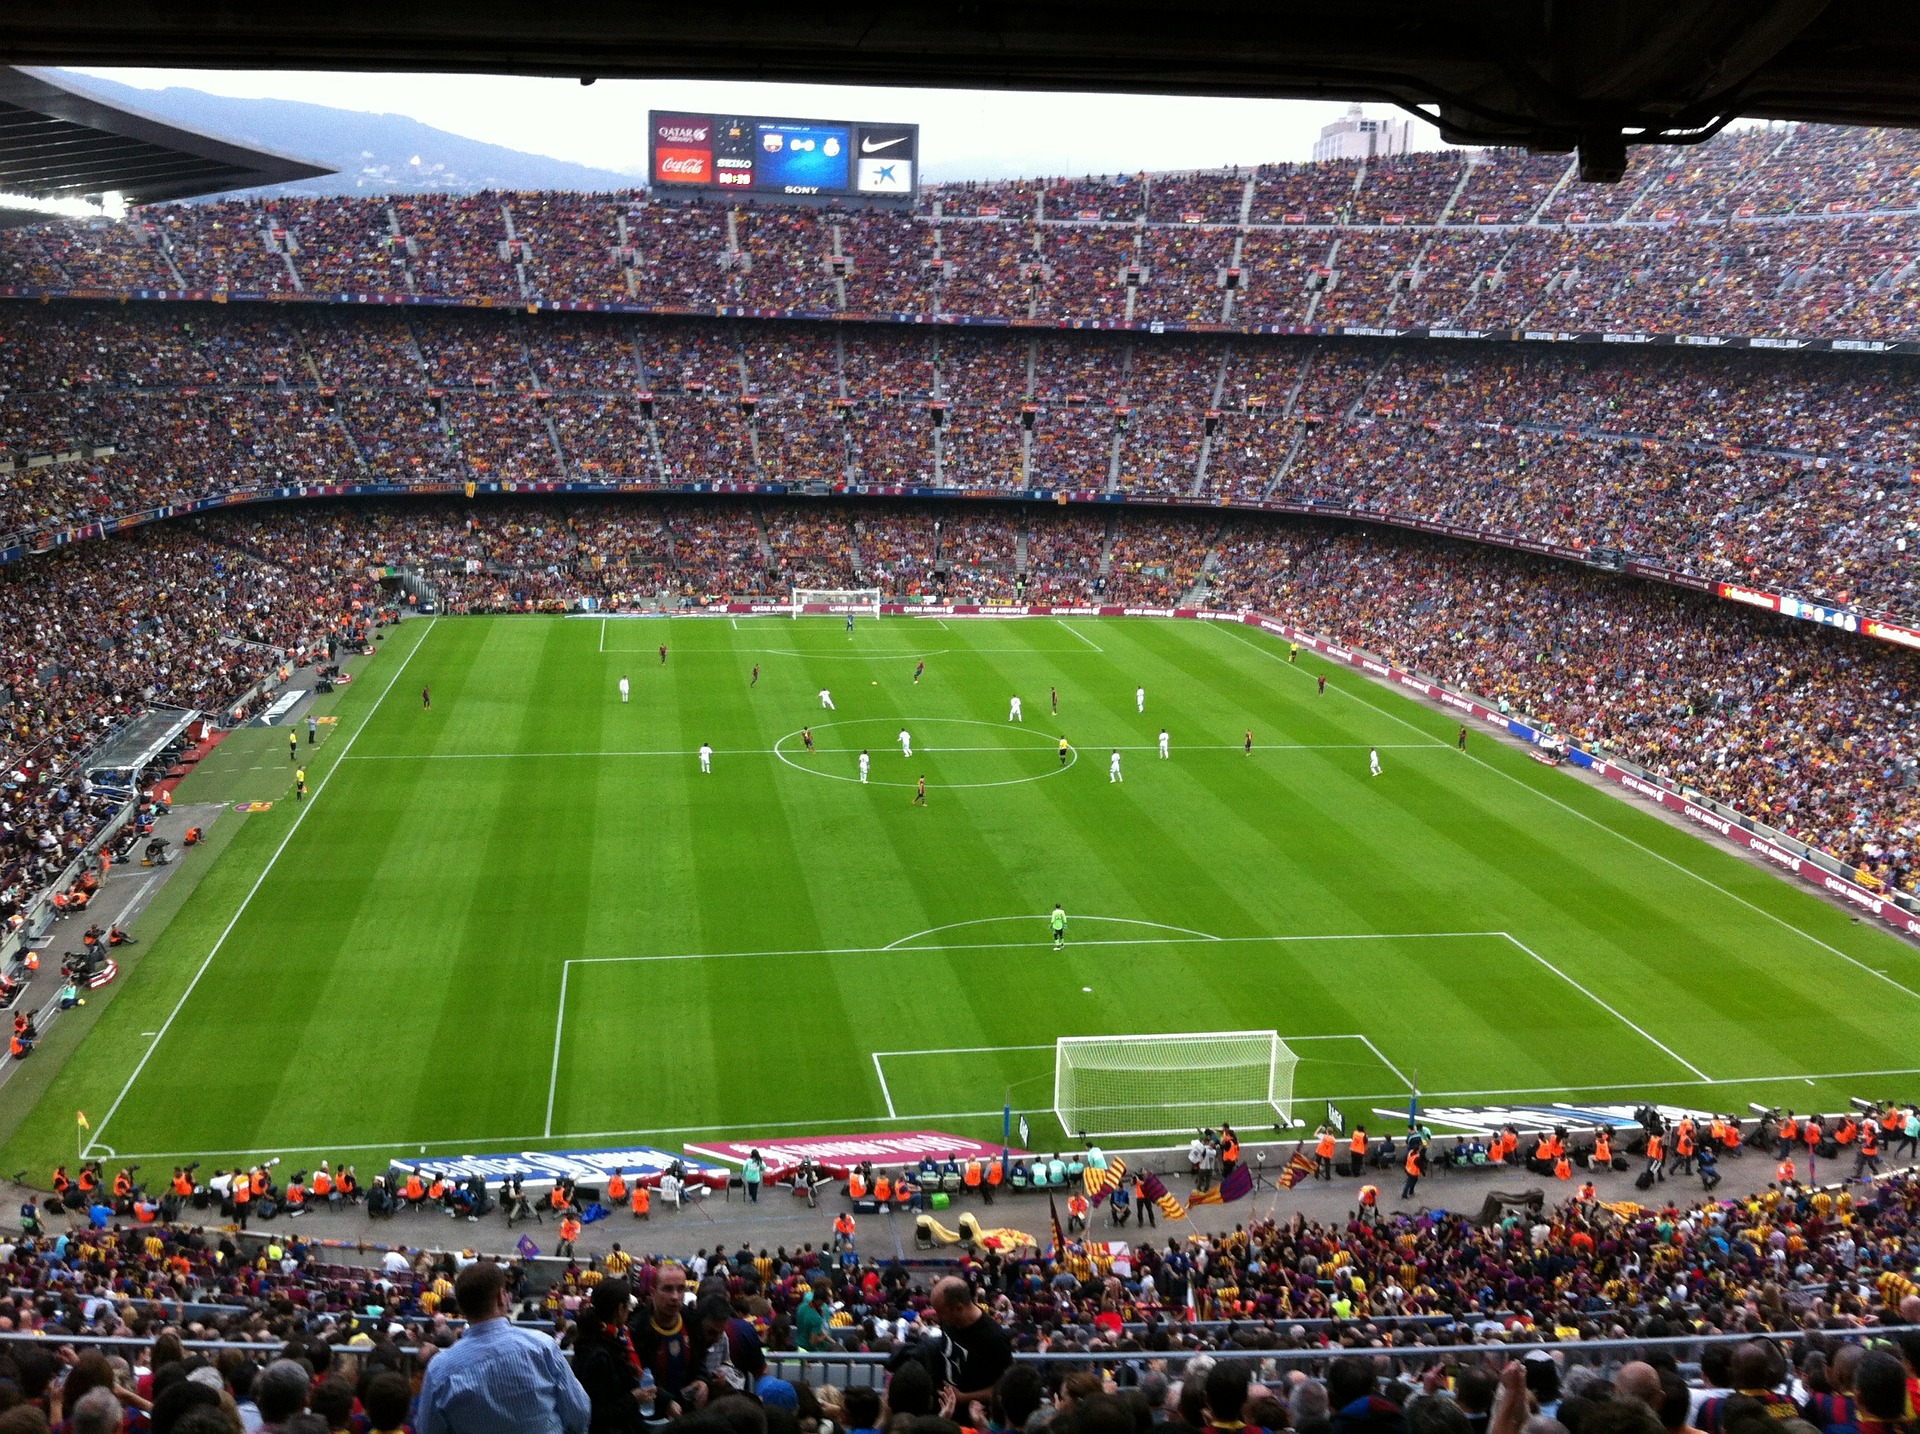 La Liga Barcelona Tickets günstig - auch das berühmte El Classico können Sie hier günstig kaufen - Kopie